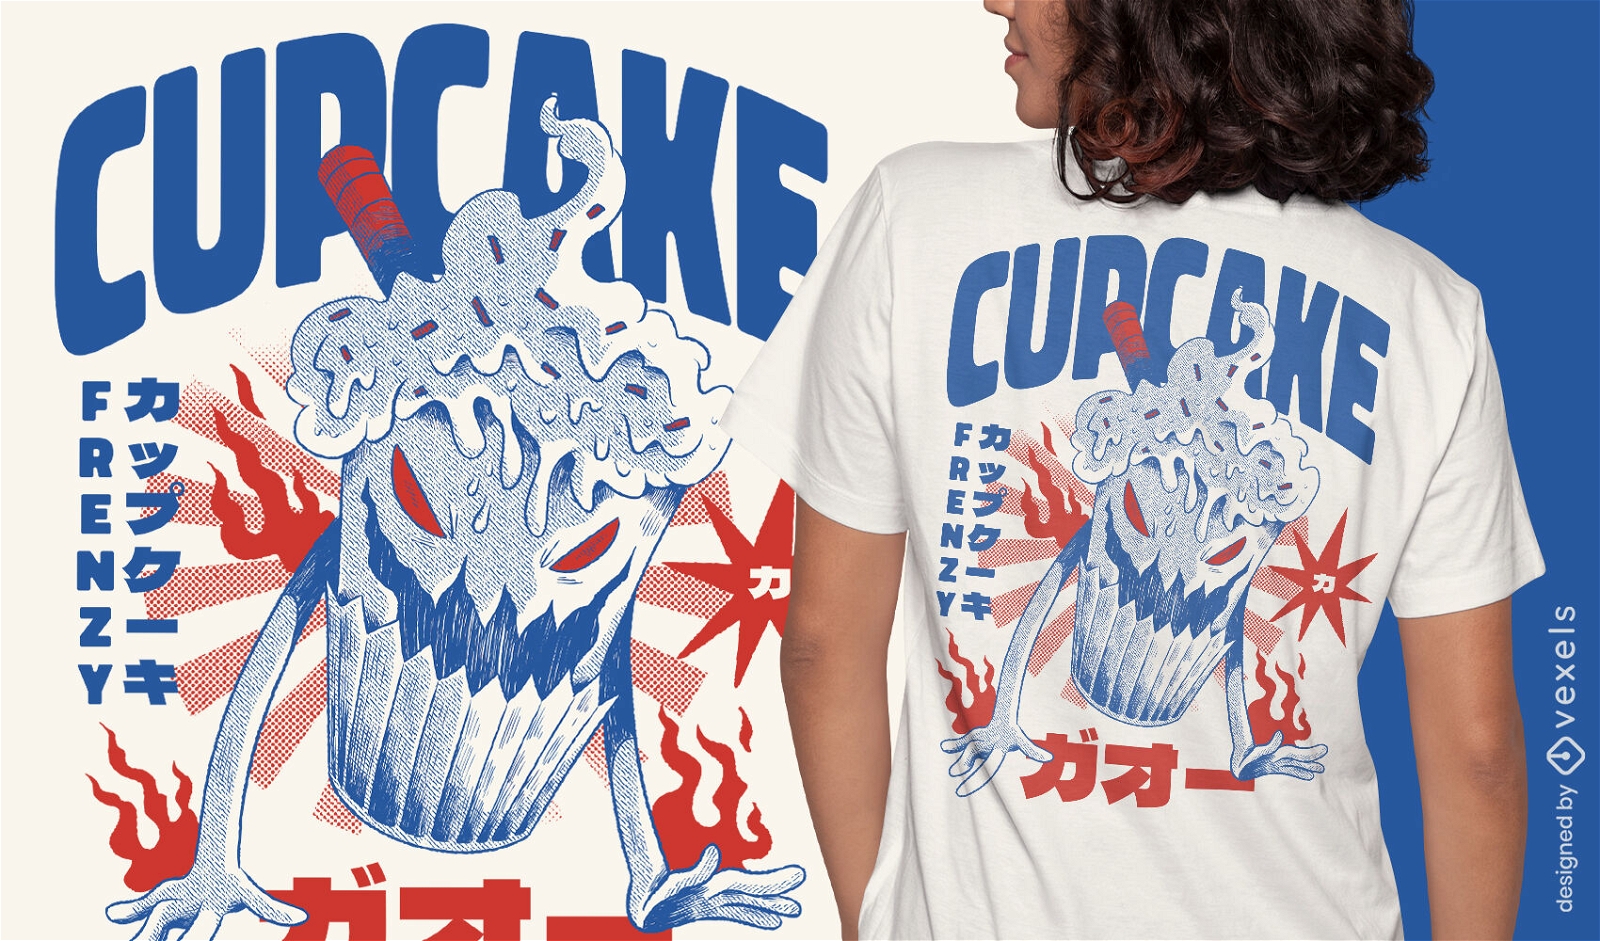 Japanisches Cupcake-Monster-T-Shirt-Design